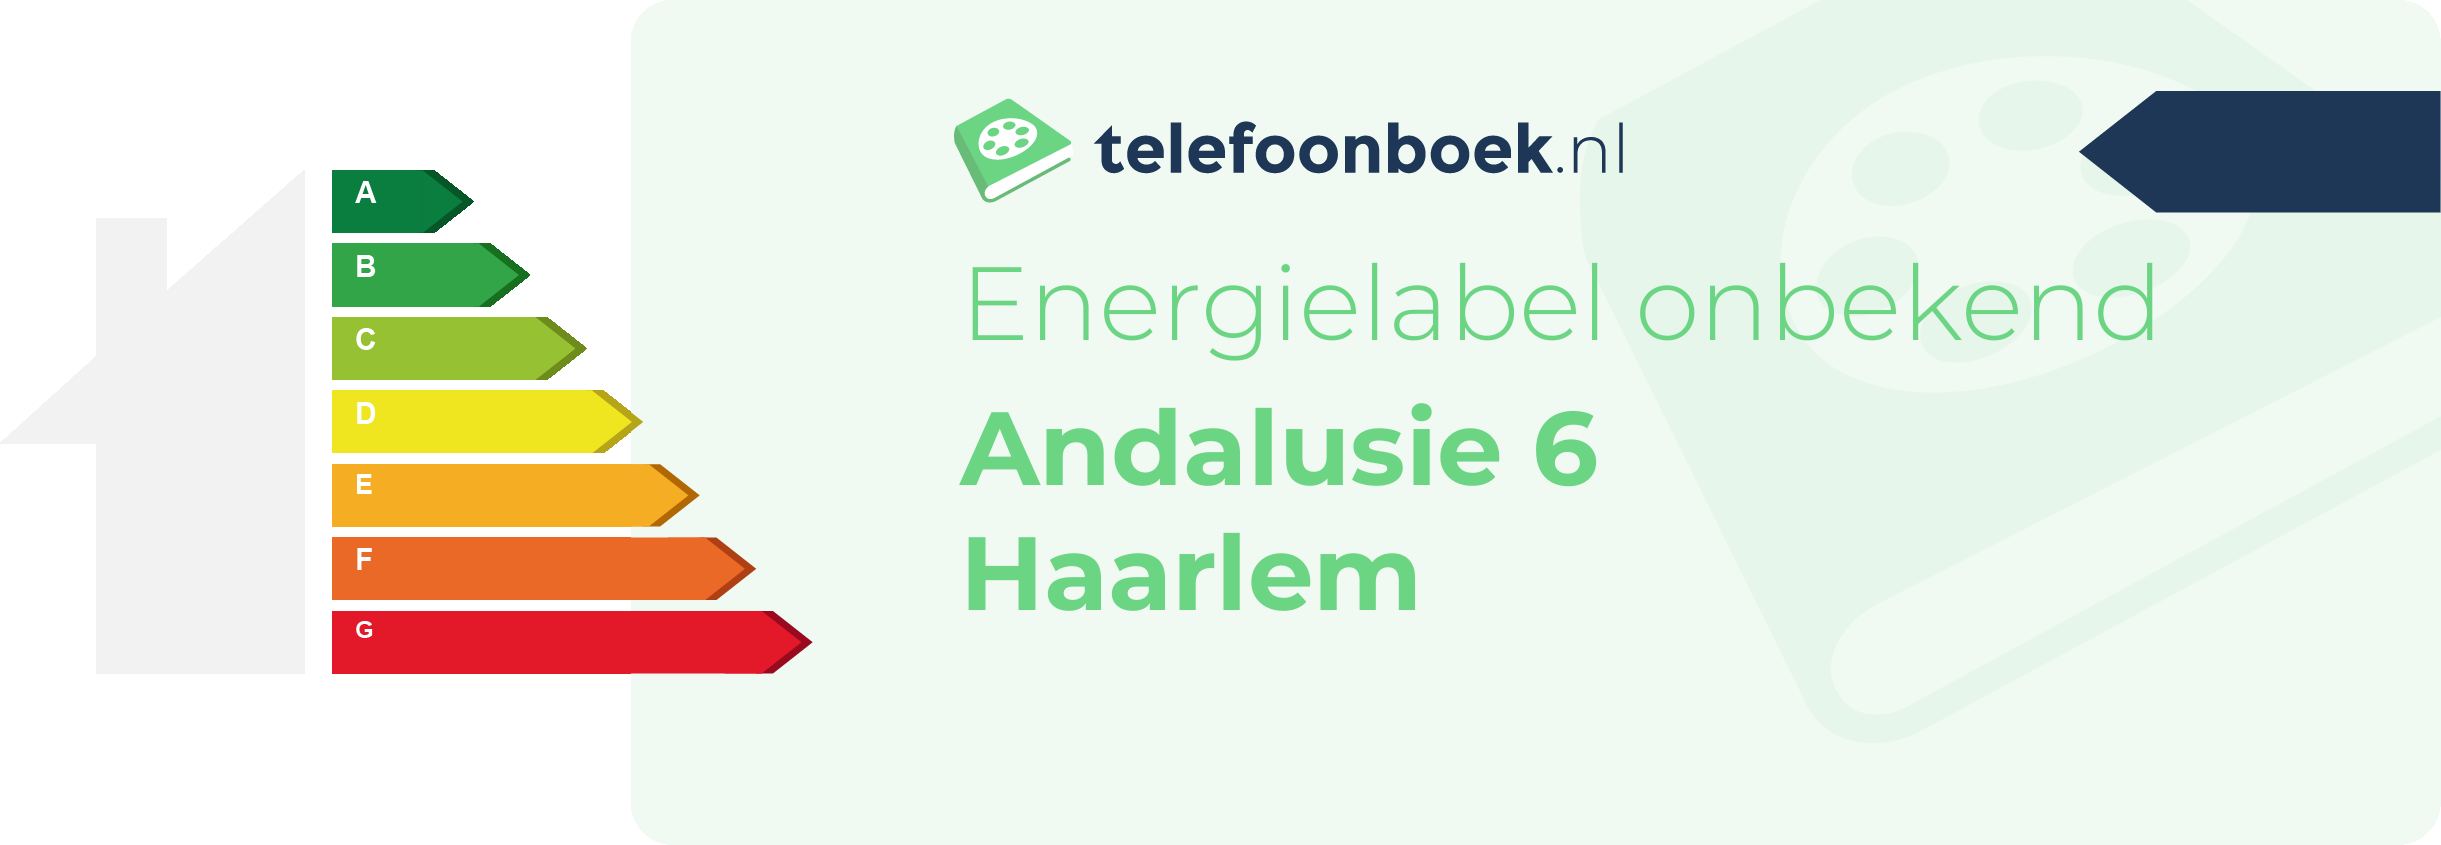 Energielabel Andalusie 6 Haarlem